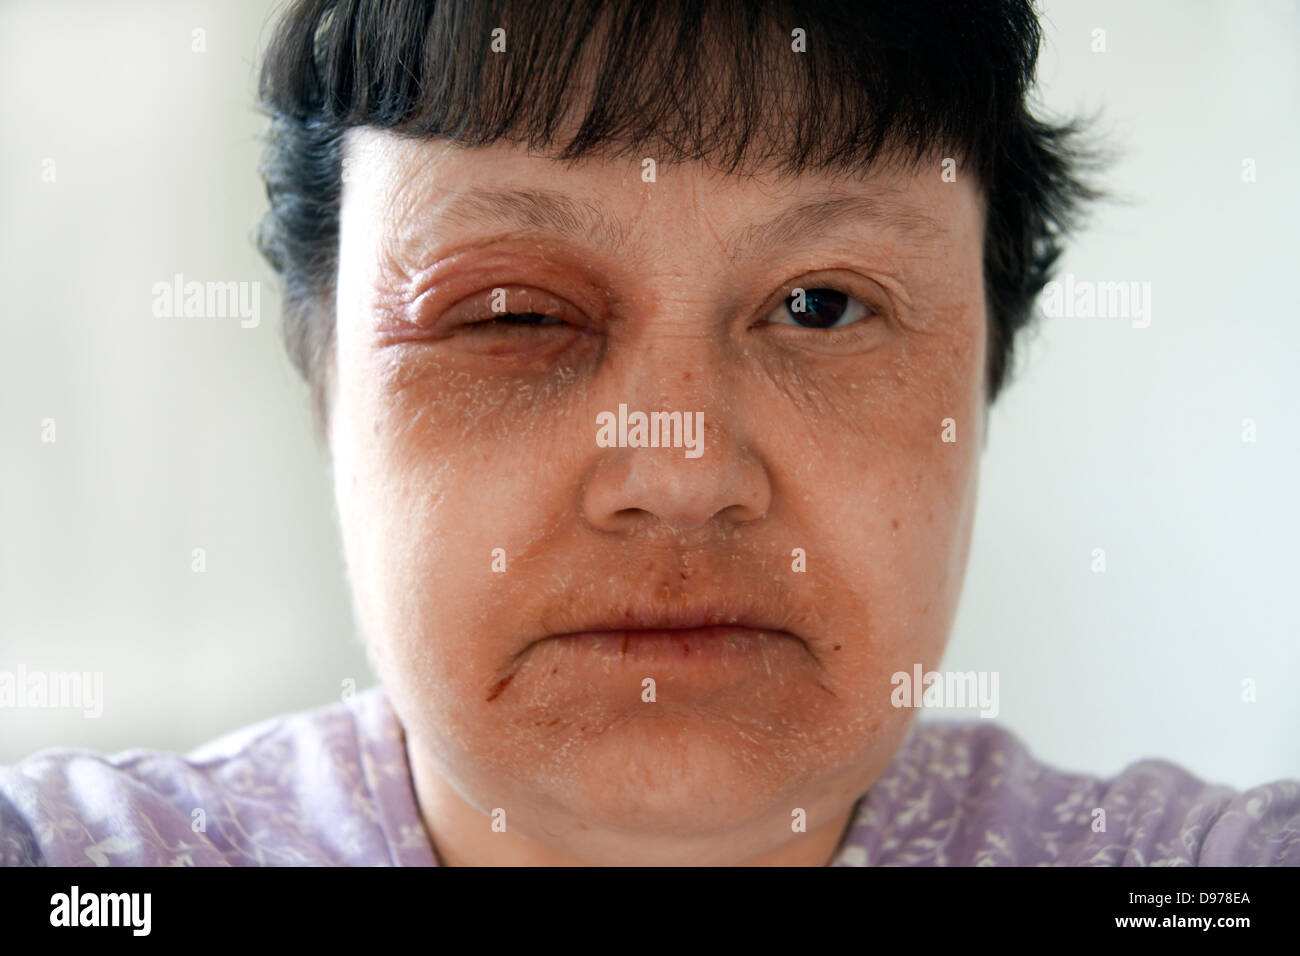 Frau mit Ekzemen & einen Ausschlag für die meisten des Gesichtes mit dem Muskelkater umgebenden & beeinflussen die Augen & Mundbereich leiden Stockfoto